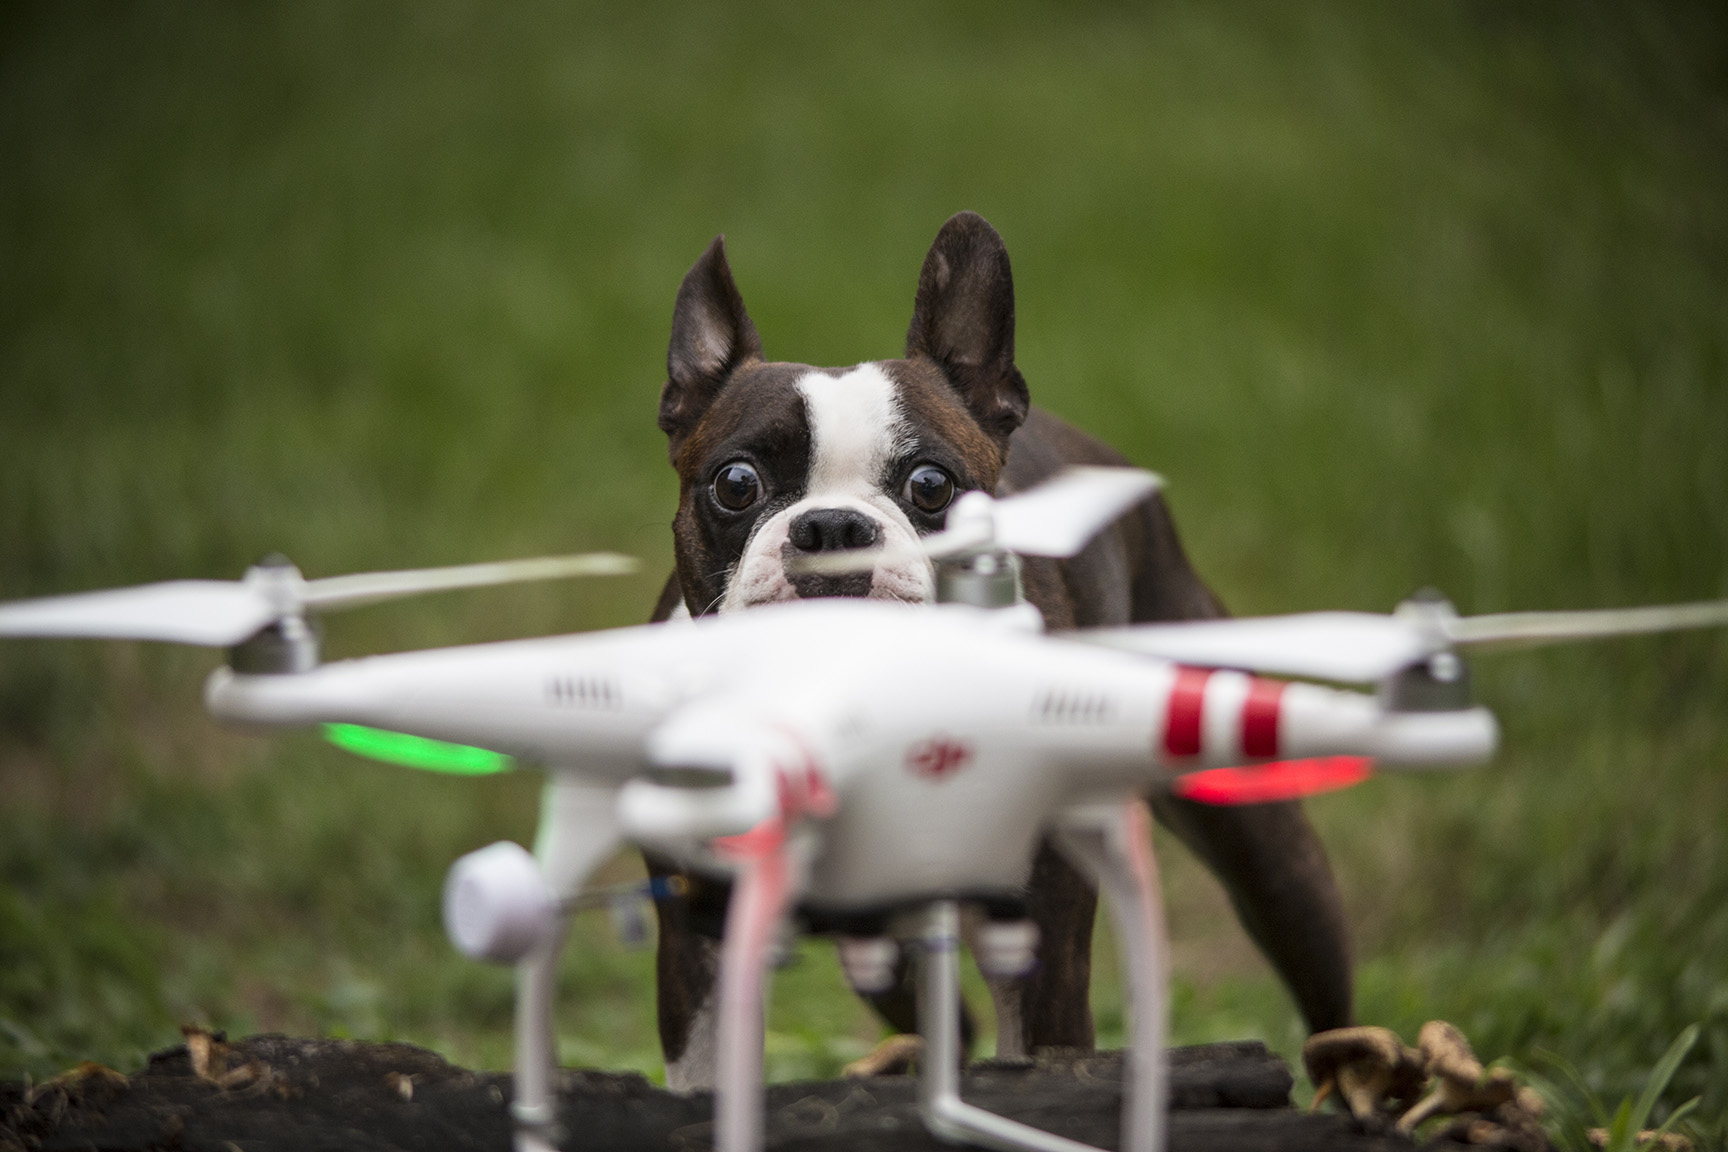 juan-perro-drone